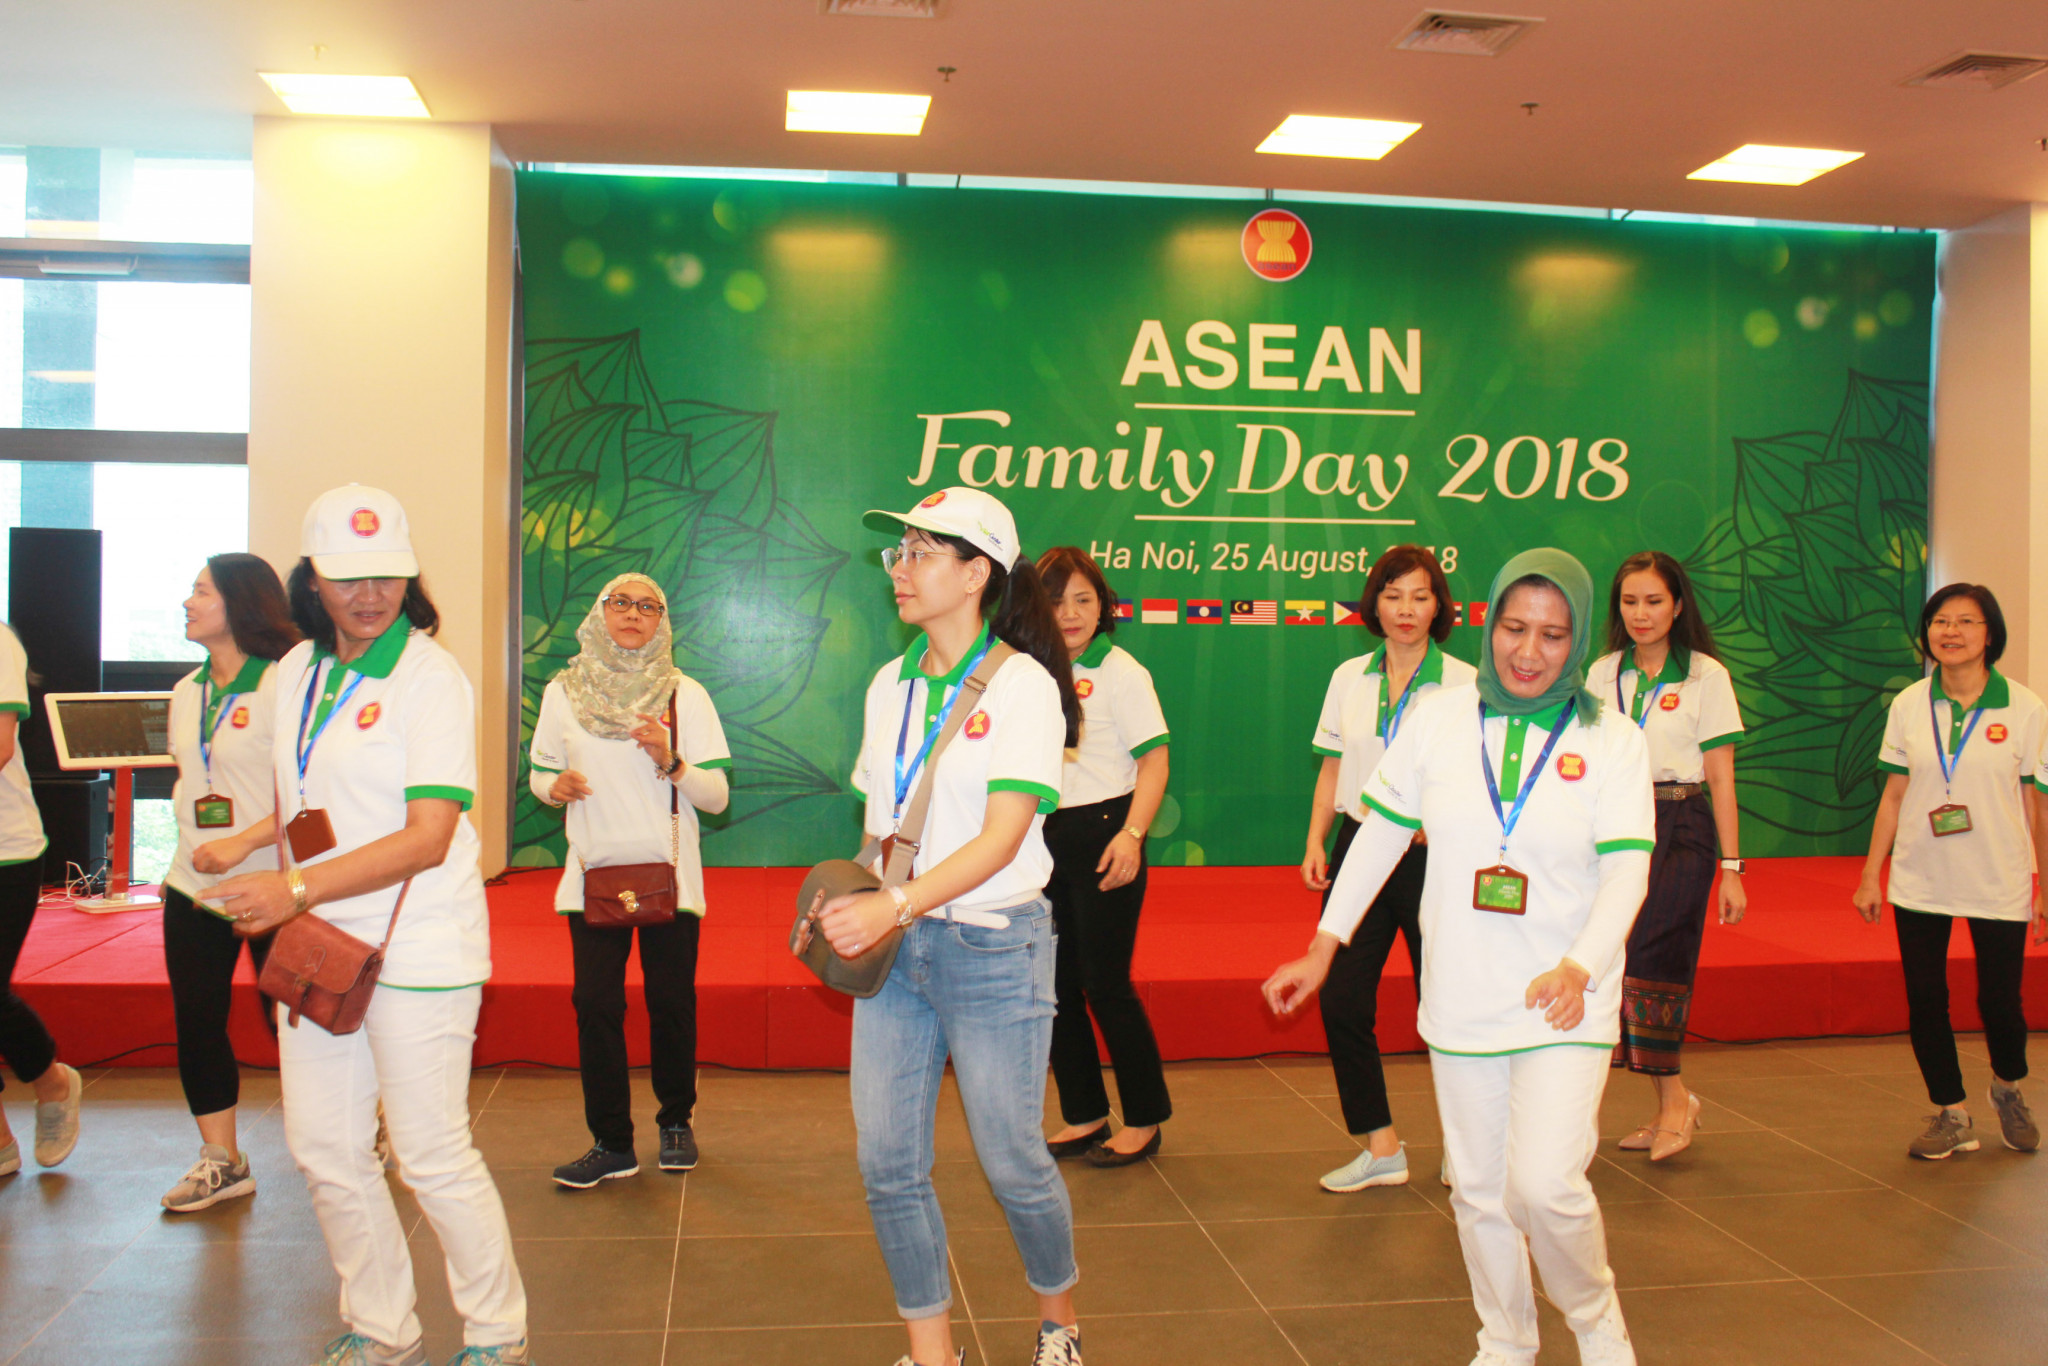 Đại sứ cũng bày tỏ tin tưởng và khuyến khích thế hệ trẻ ASEAN tích cực học tập, trau dồi, phát huy tinh thần đoàn kết, tự cường và sáng tạo để tiếp tục xây dựng Cộng đồng ASEAN phát triển vững mạnh trong tương lai.